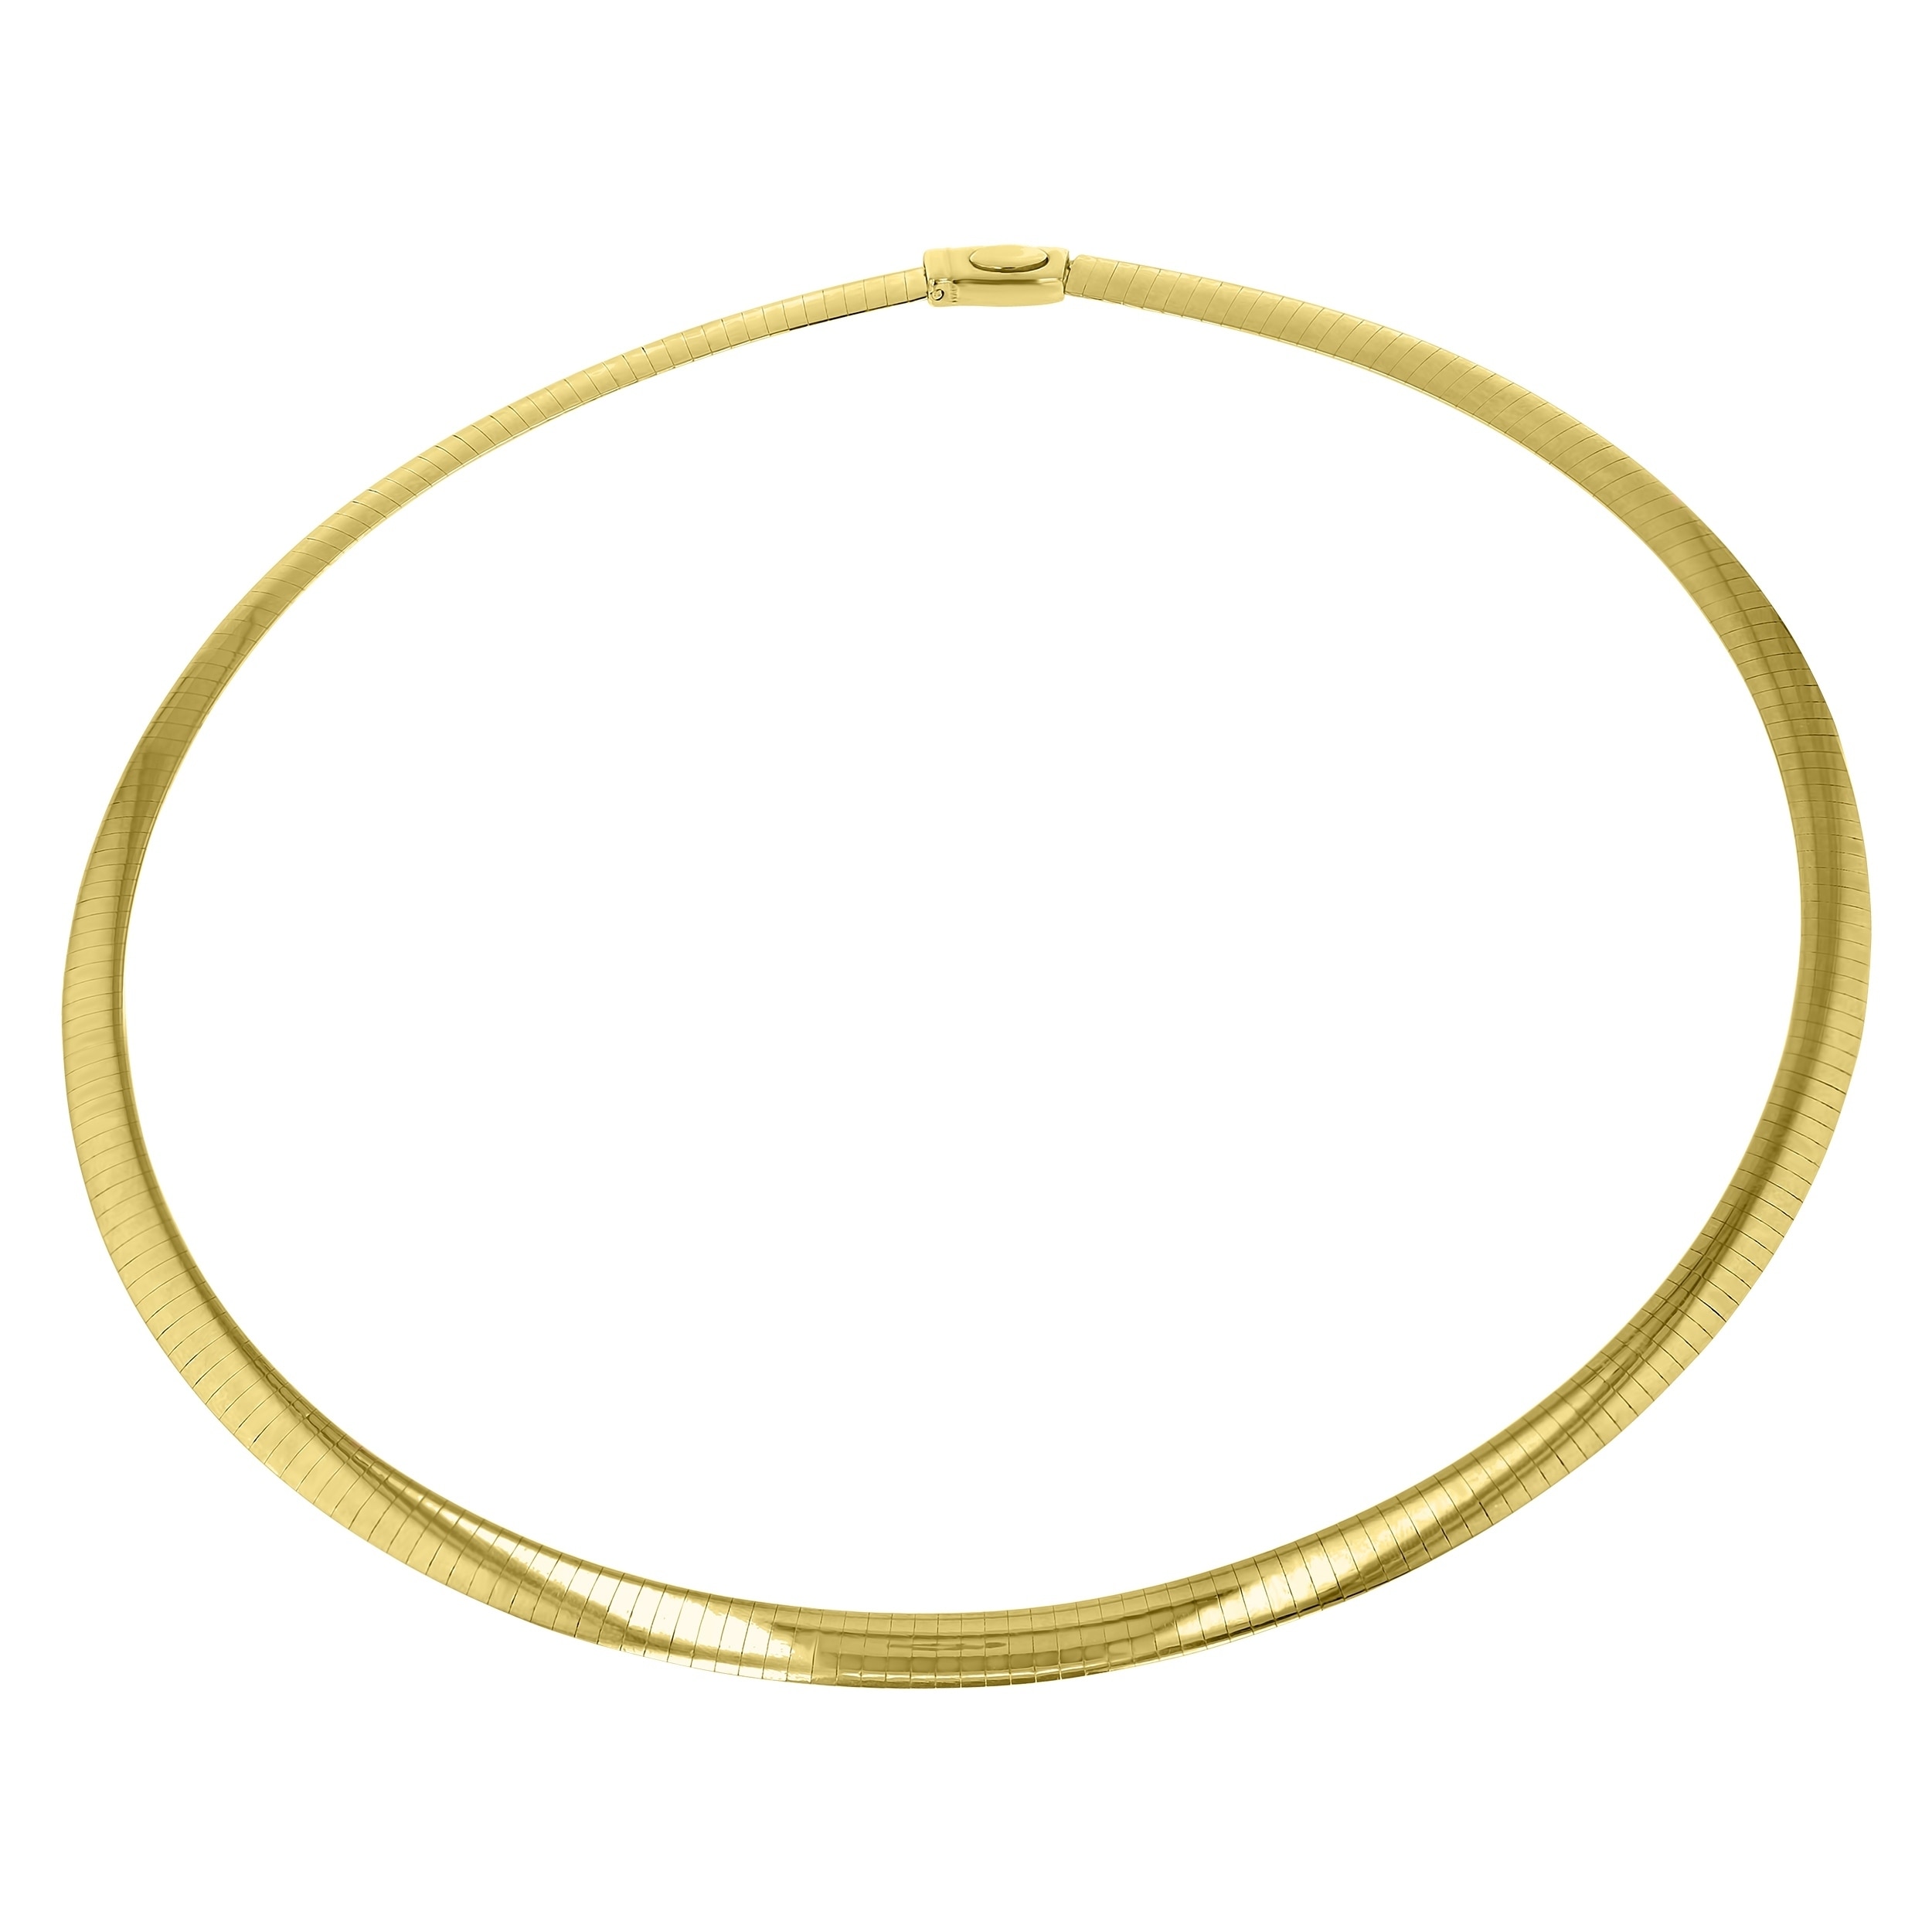 10k gold omega necklace